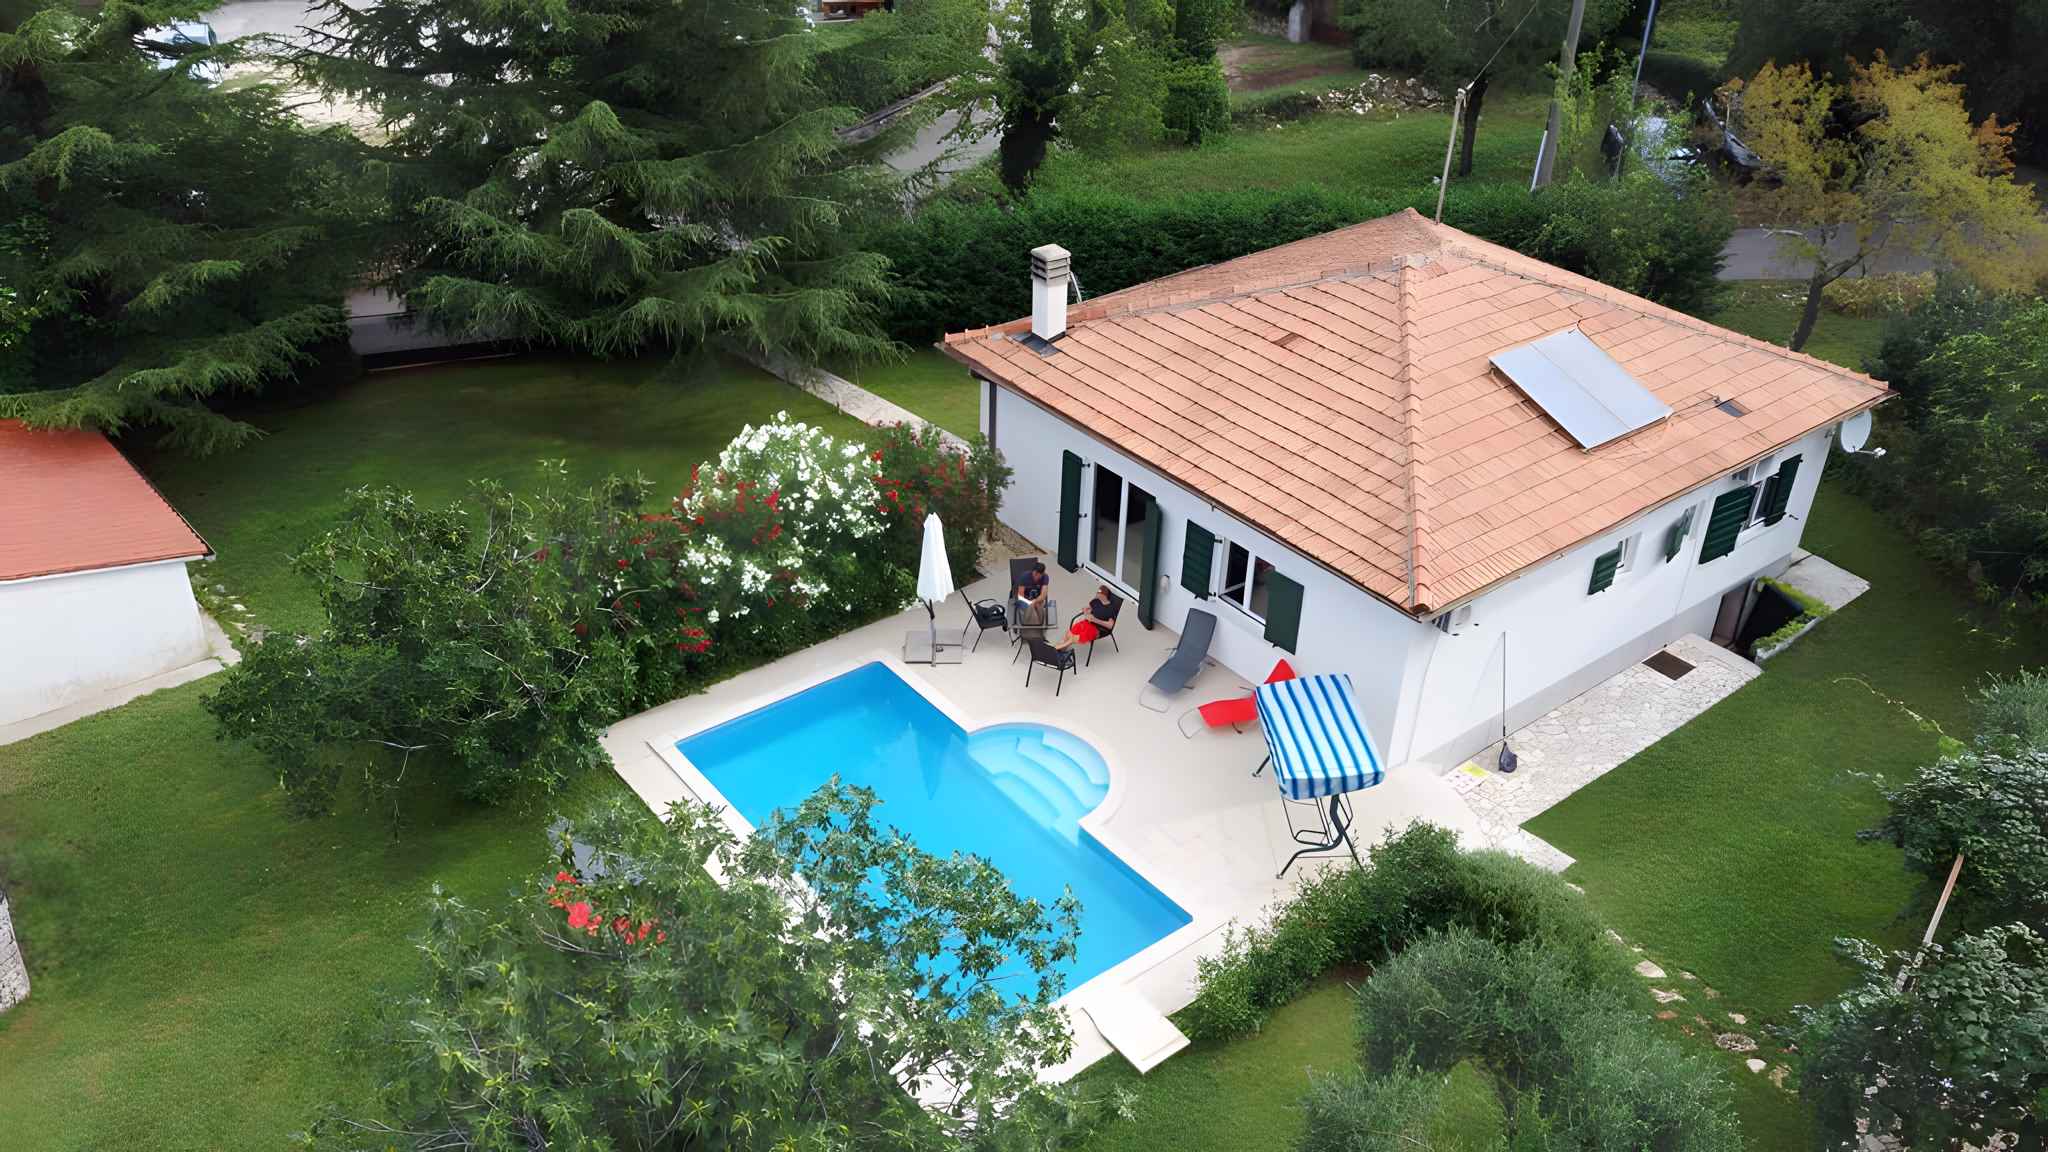 Villa mit Pool und Klimaanlage Ferienhaus in Kroatien